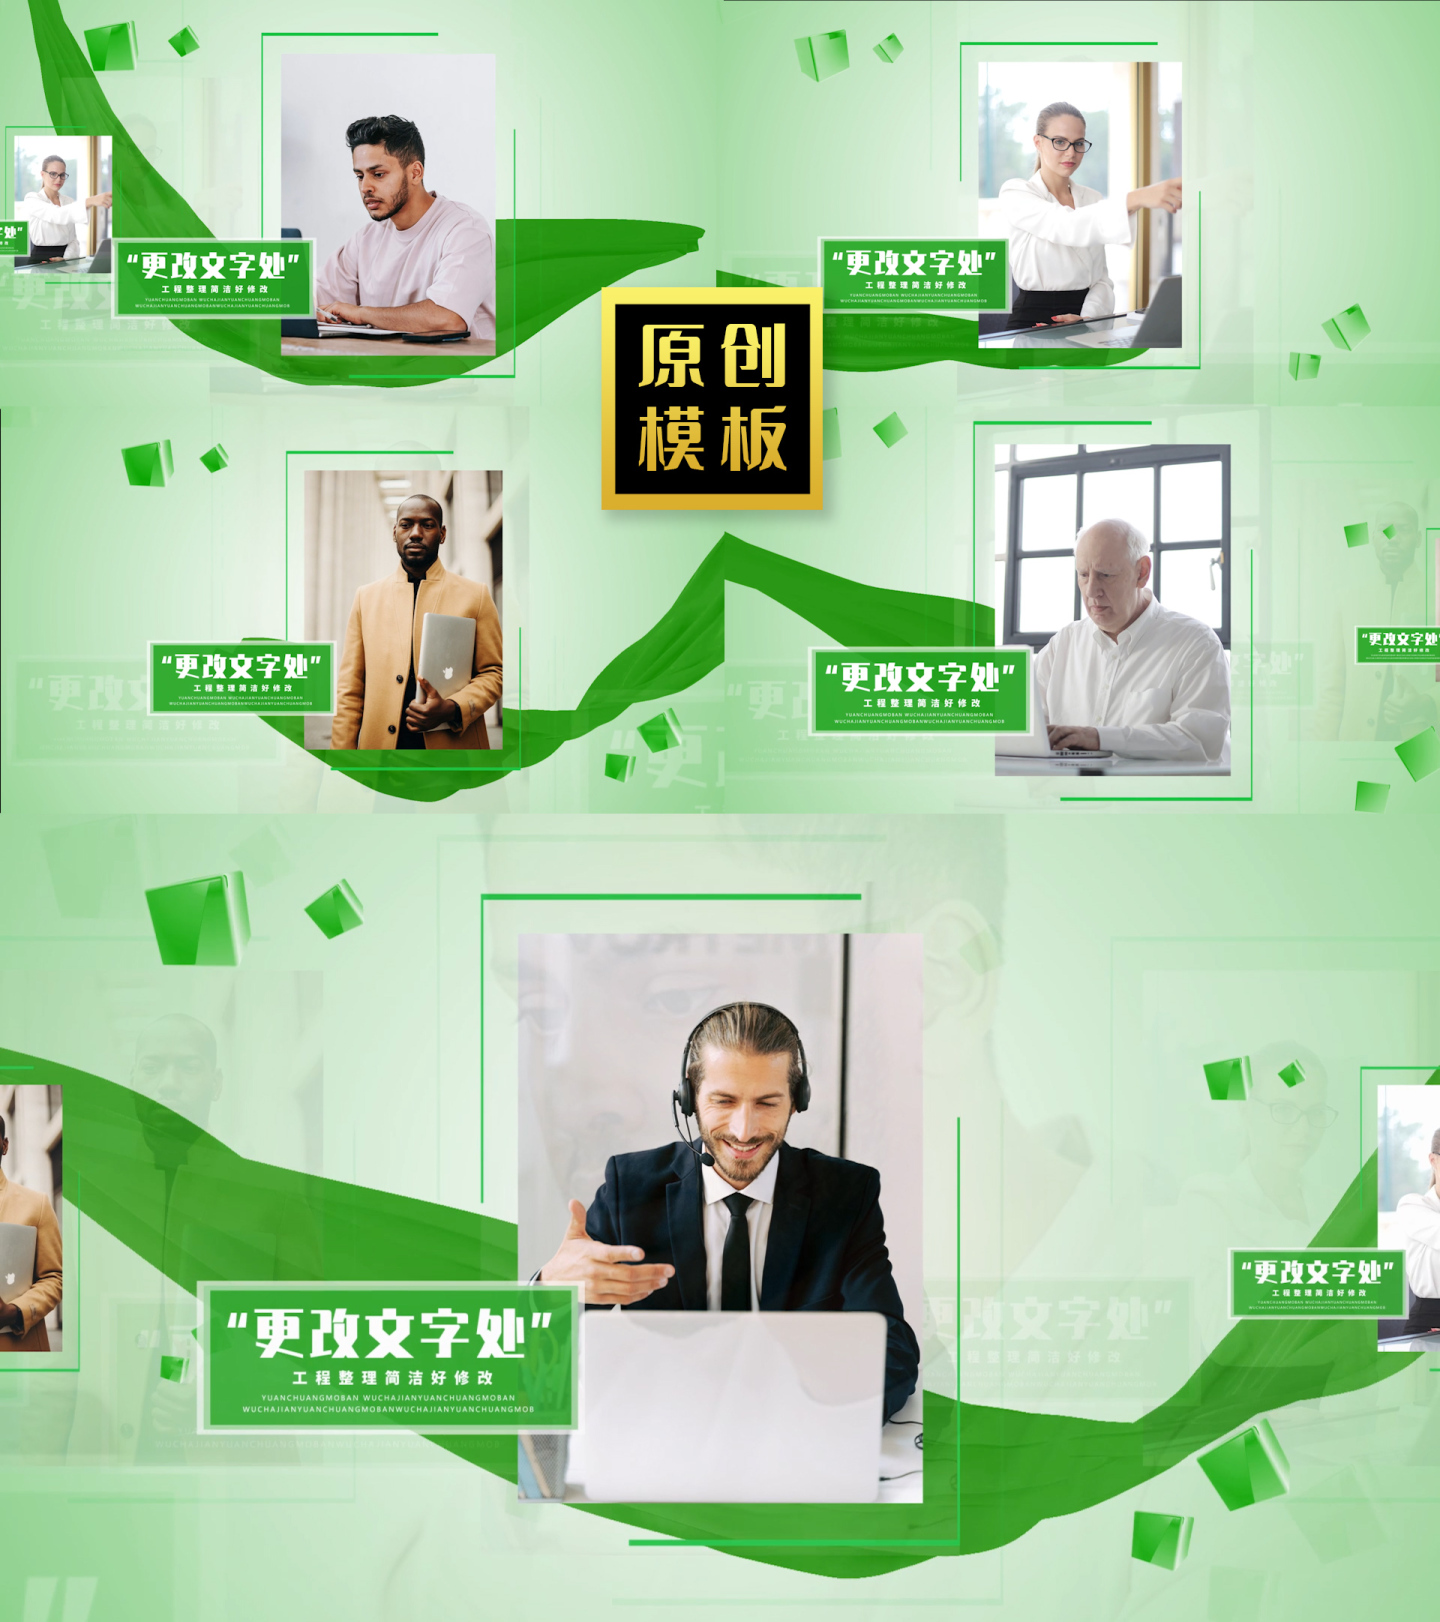 48图绿色人物包装企业团队展示轮播包装